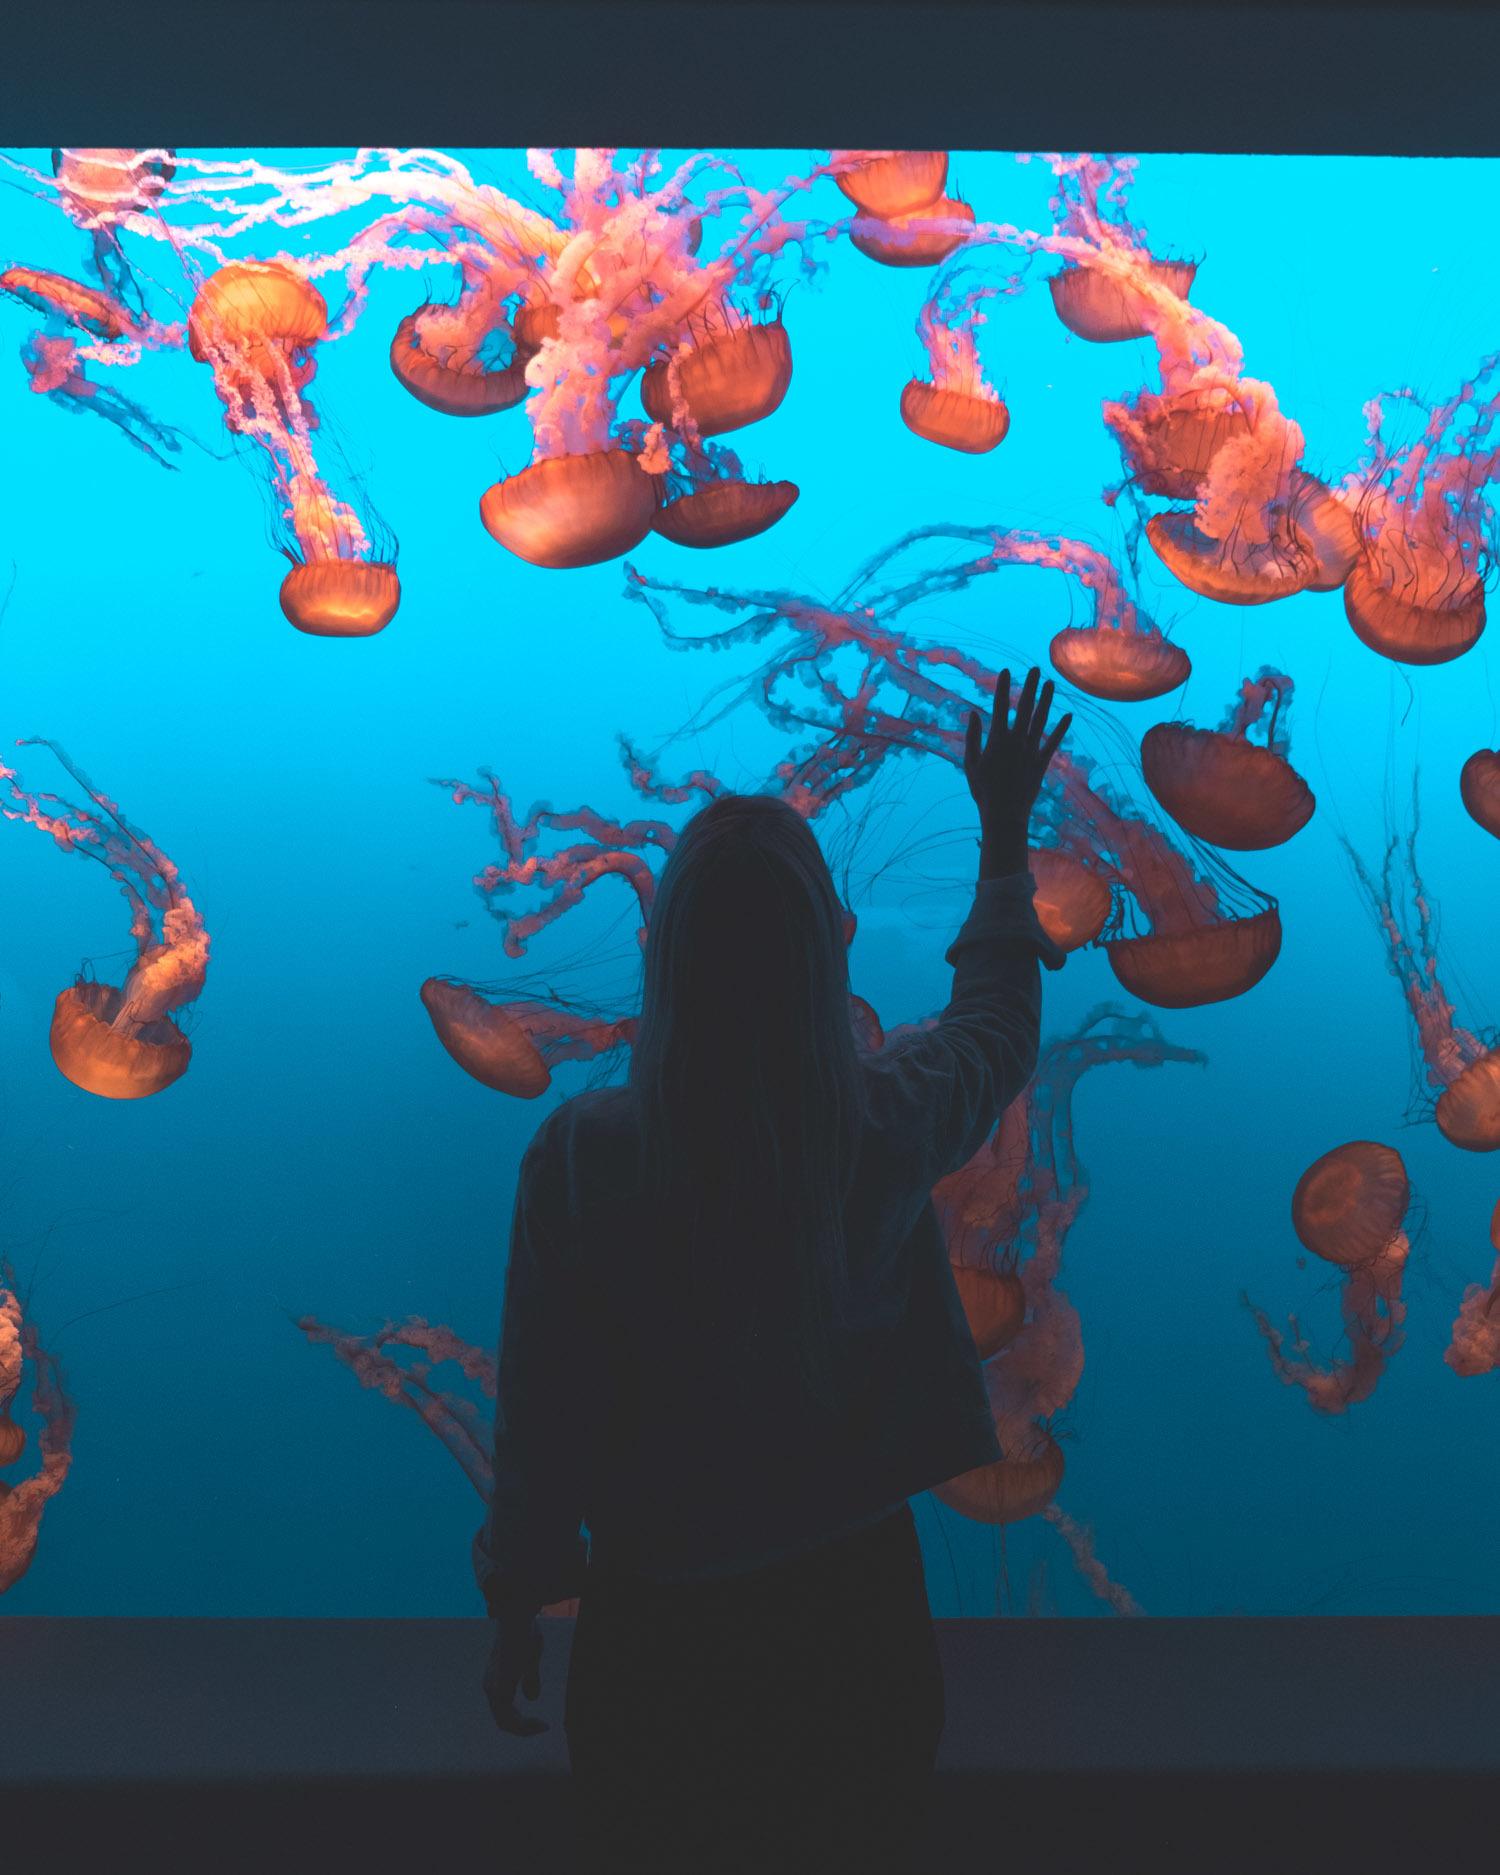 Monterey Aquarium, California